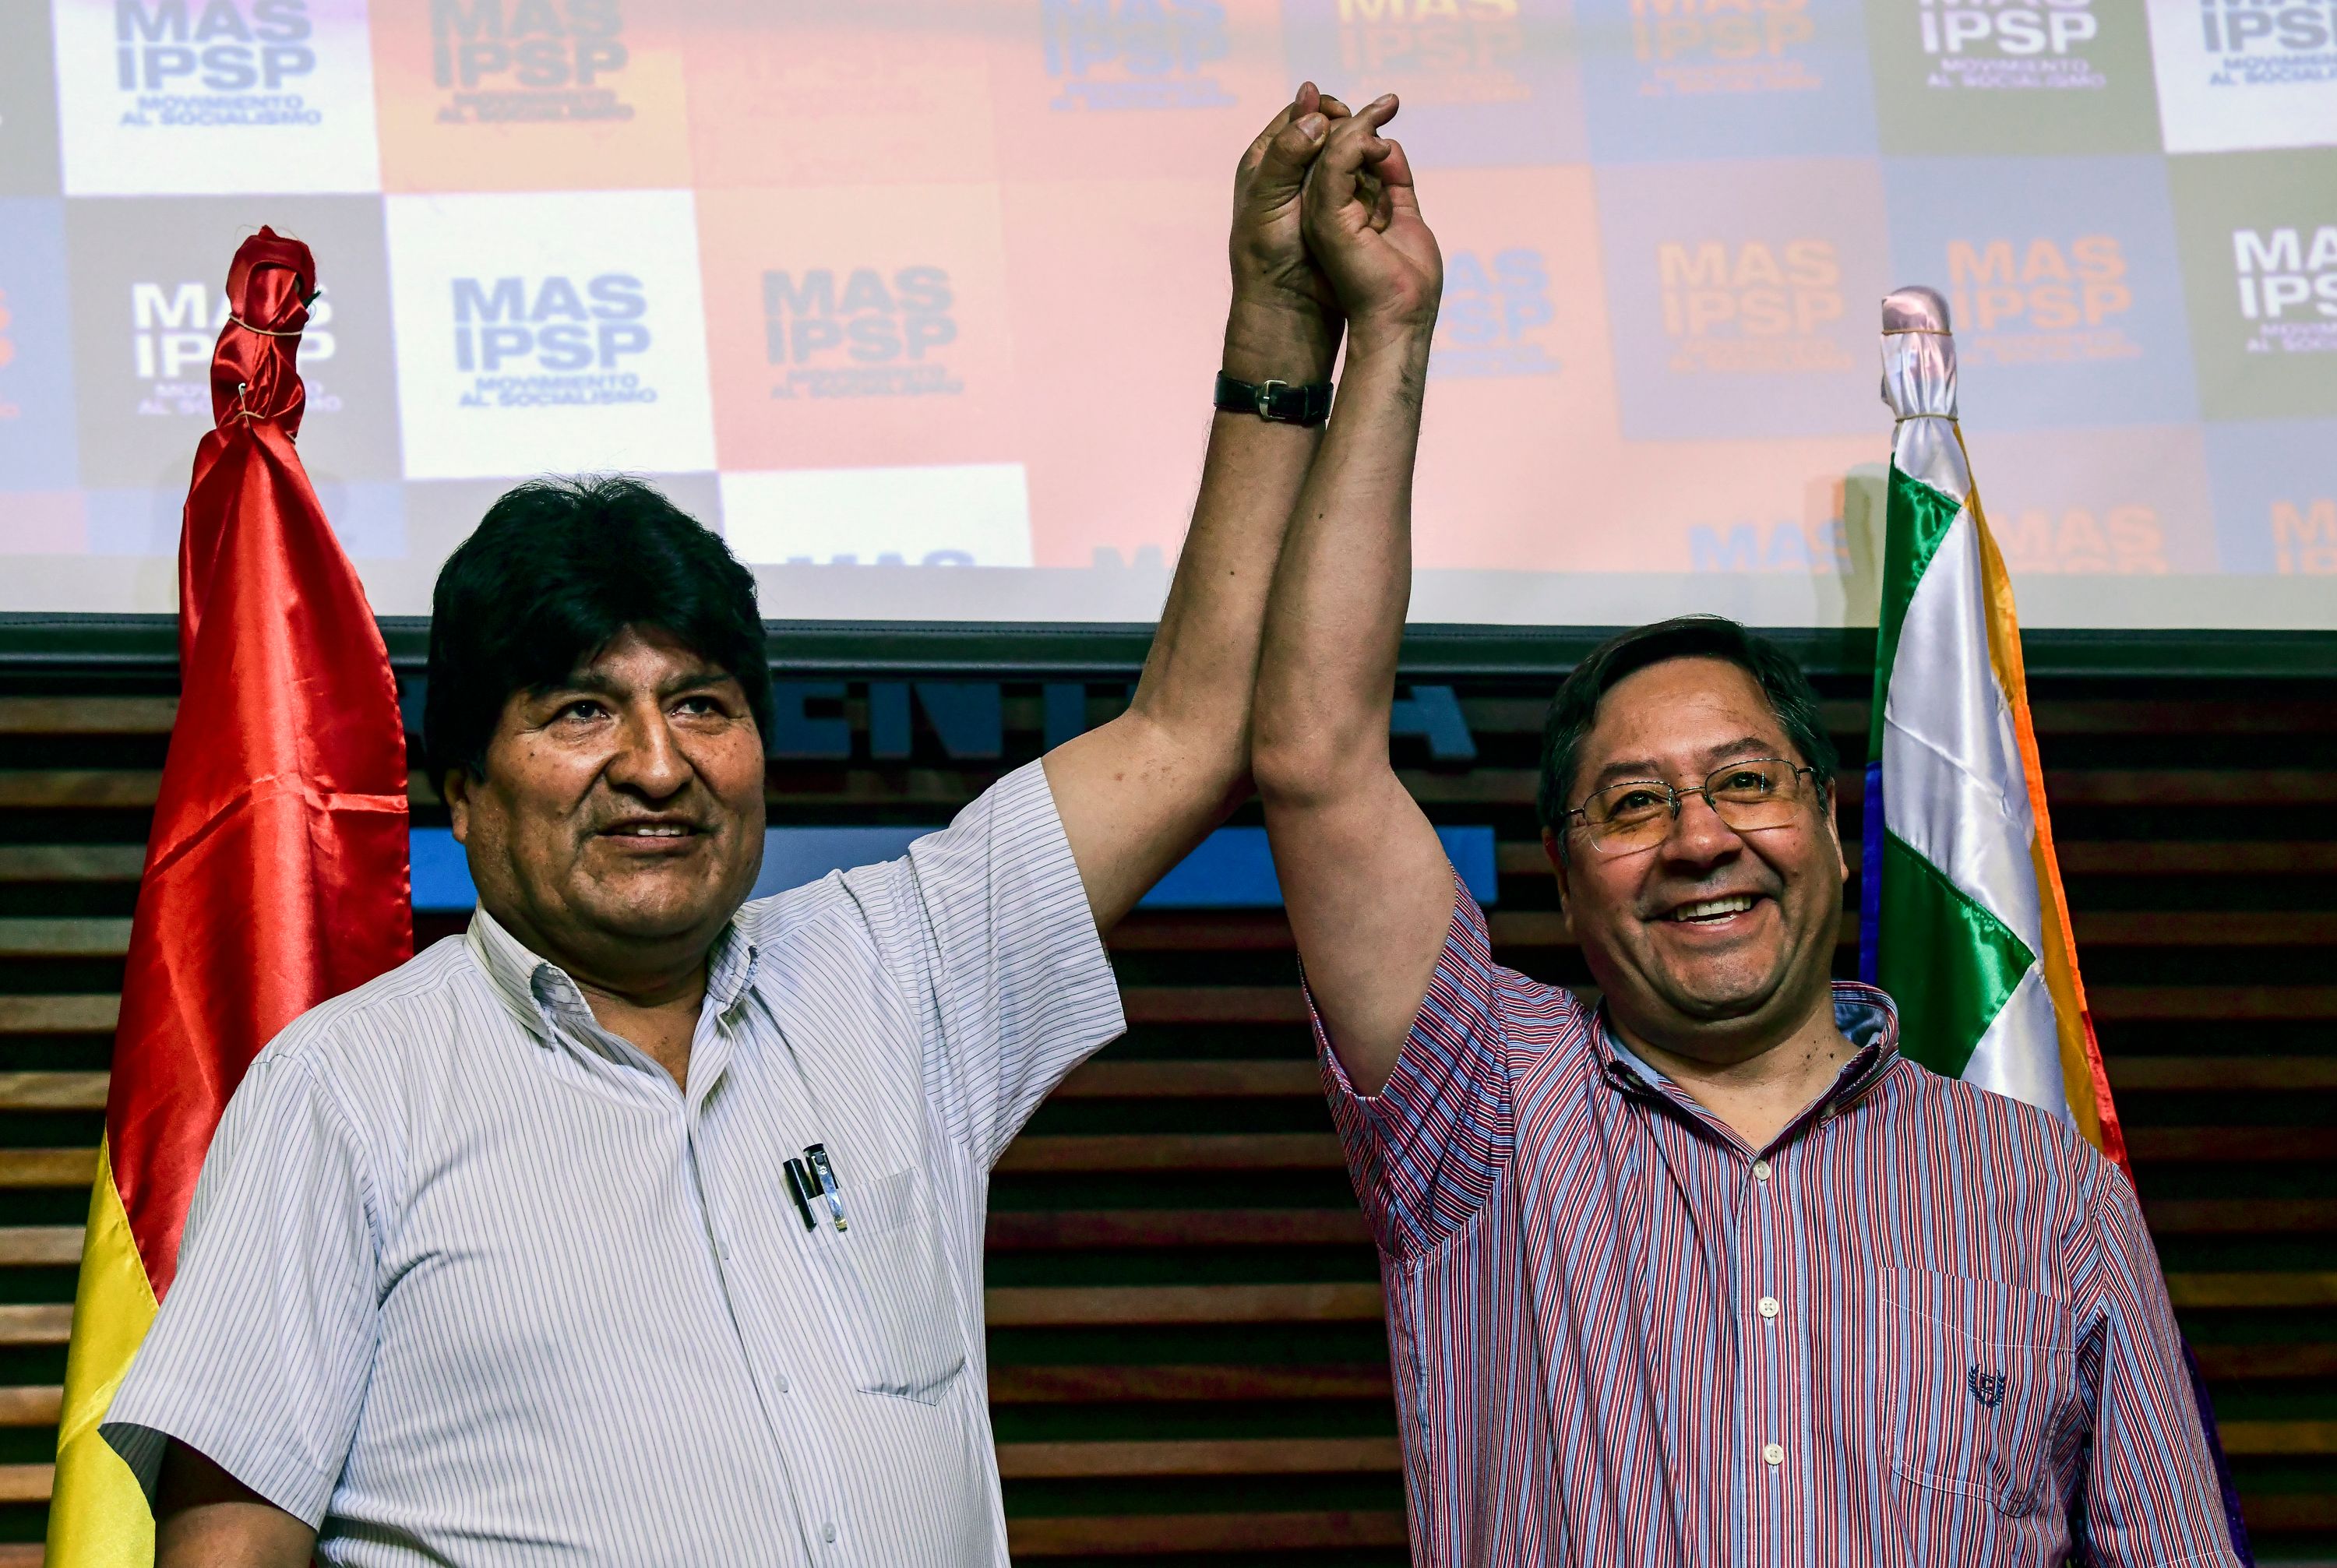 En medio de tensiones entre Evo Morales y Luis Arce, el MAS celebra el congreso para elegir a su nueva dirigencia